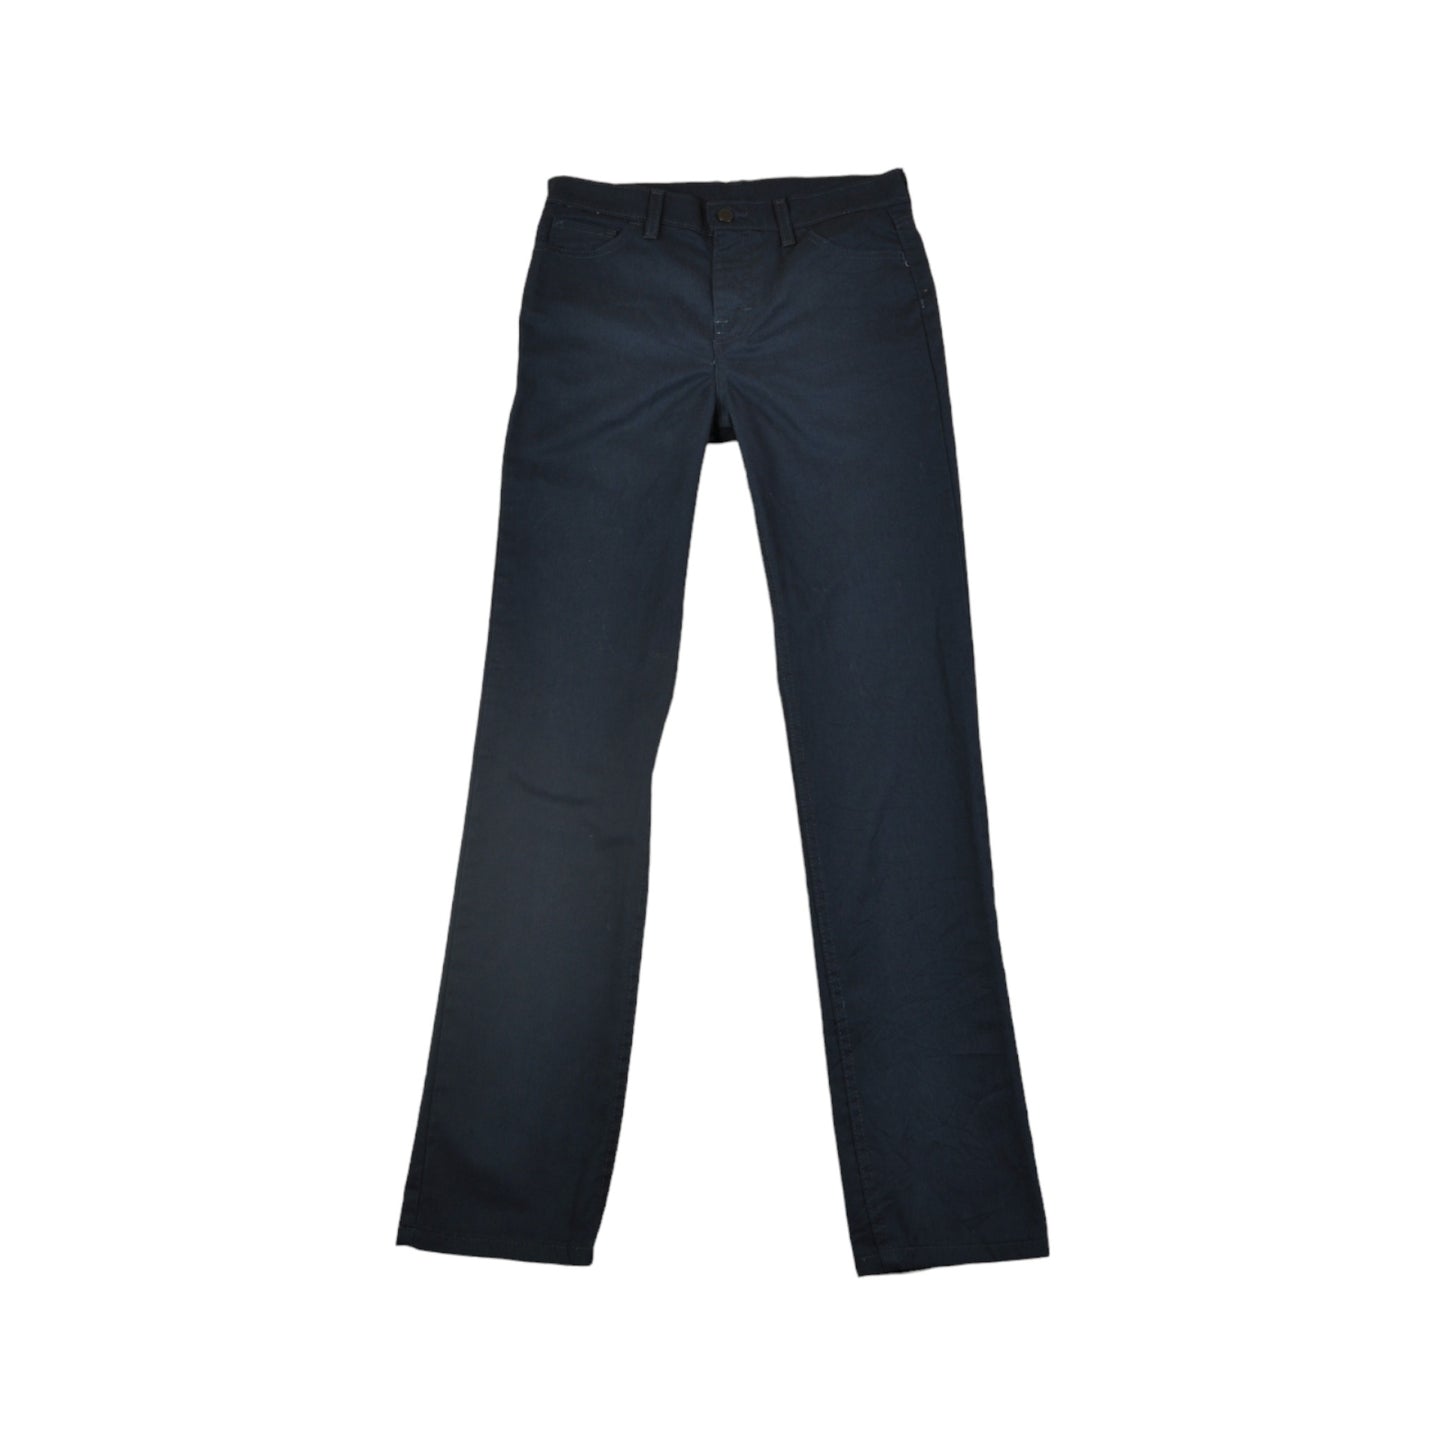 Vintage Dickies Workwear Pants Straight Leg Navy Ladies W30 L32